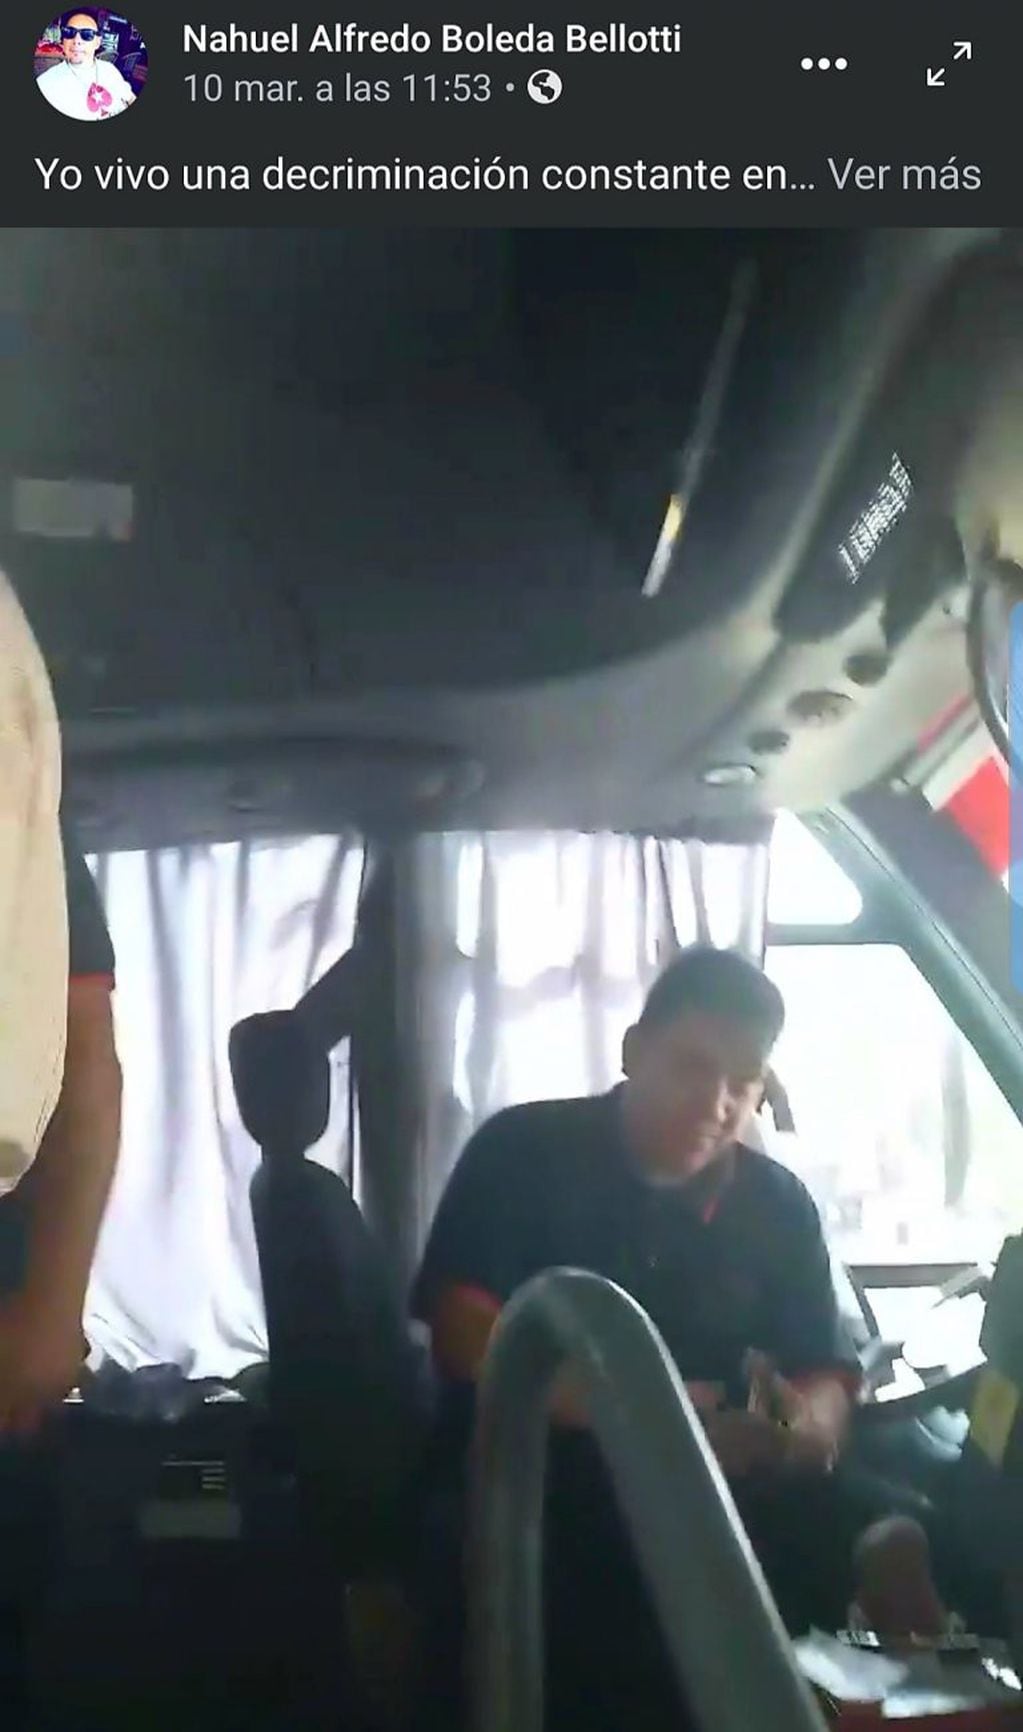 El chofer quien fue denunciado públicamente por Nahuel Boleda. (Foto: captura de pantalla del video difundido).